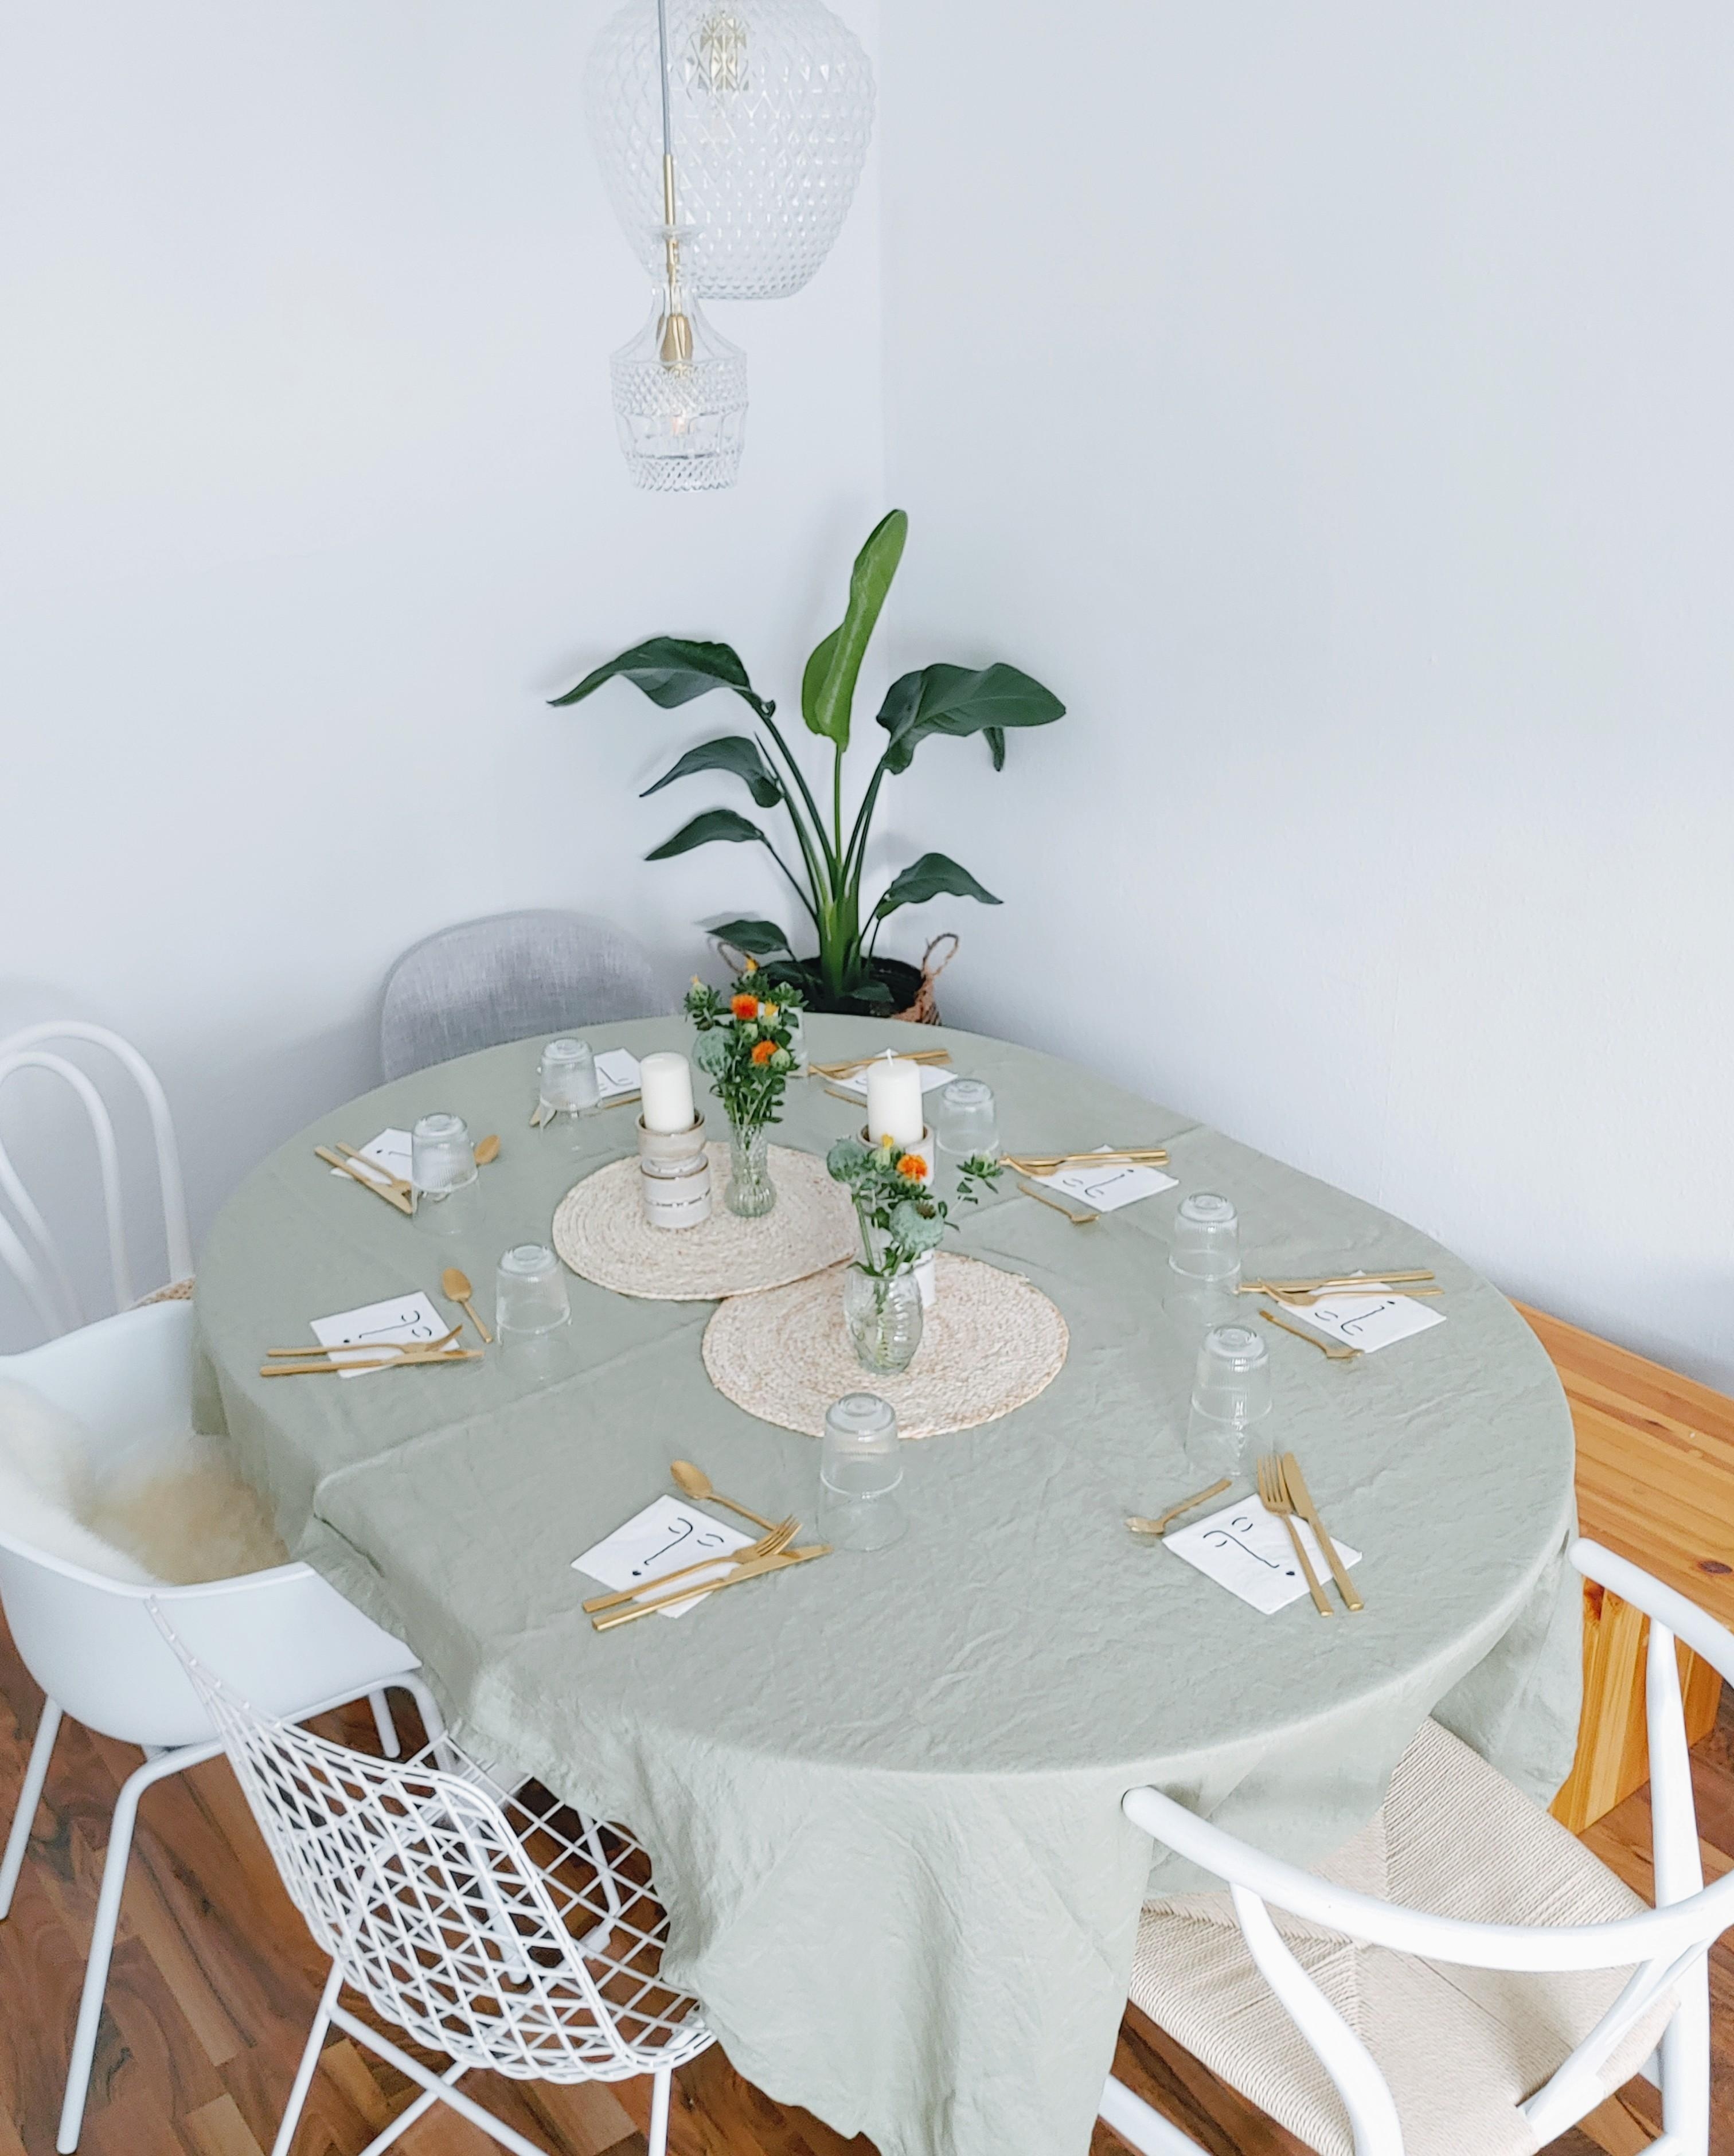 Gedeckter Tisch zum Familienbrunch...

#Livingchallenge #Tischdeko #Essecke #Naturfarben 